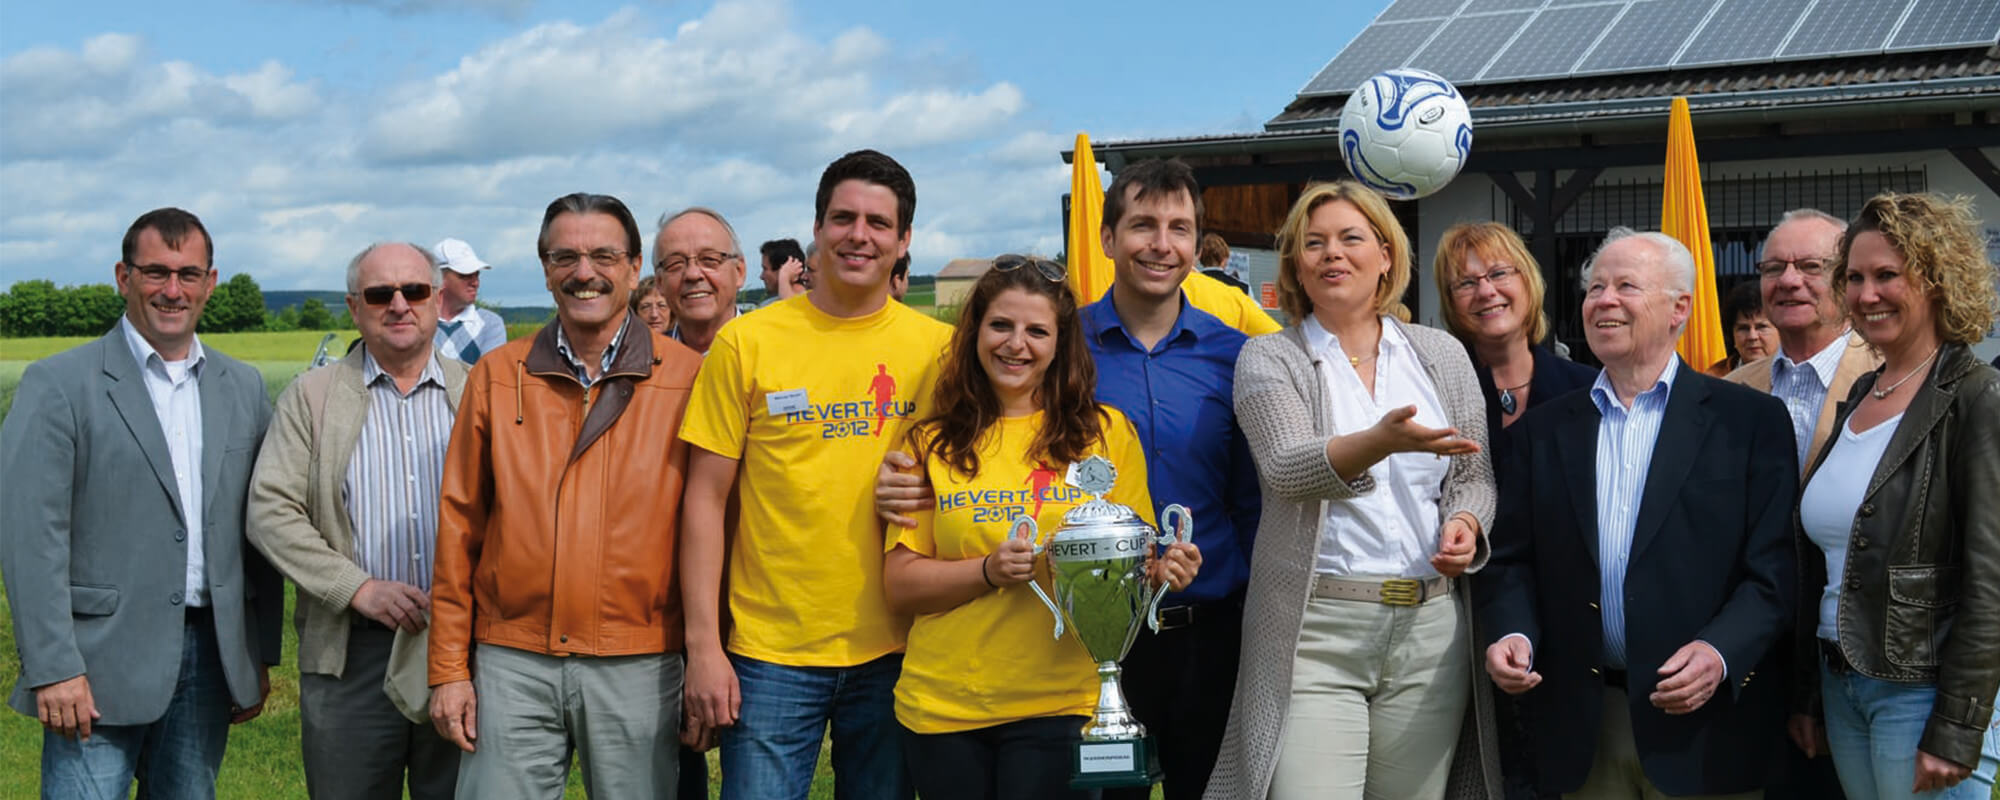 Schirmherrin Julia Klöckner eröffnet mit der Familie Hevert den 2. Hevert-Cup.